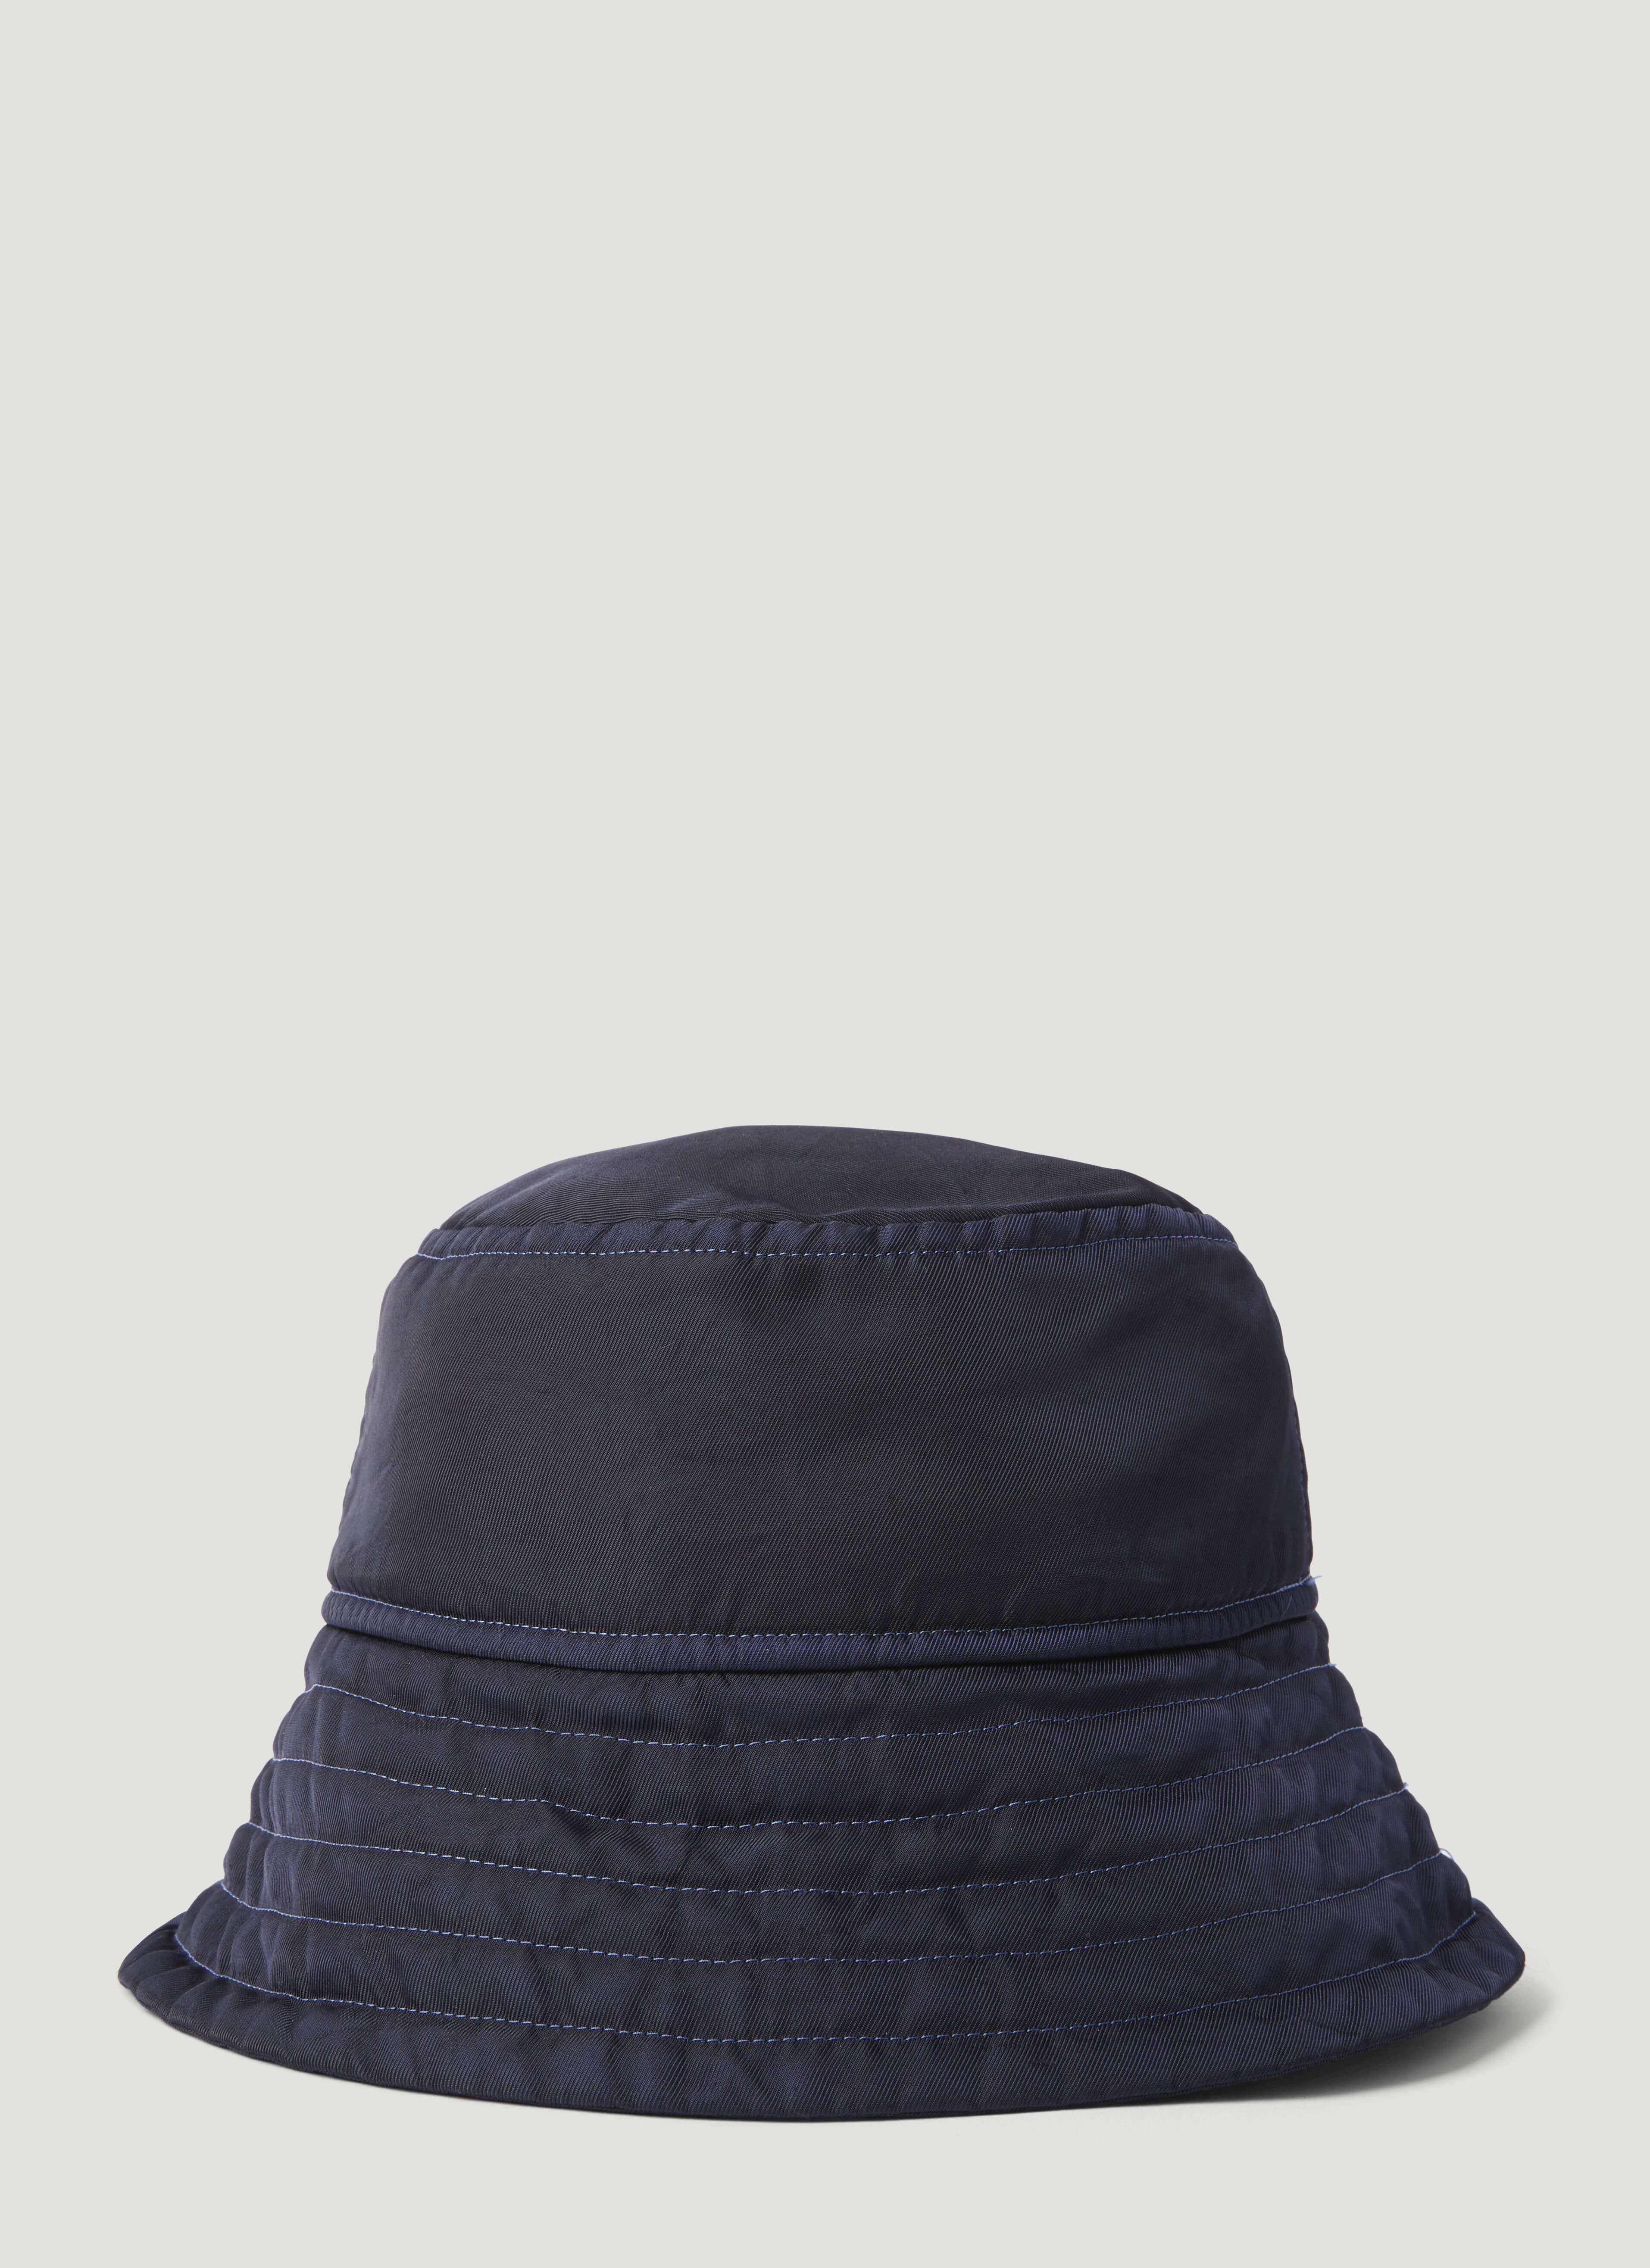 VETEMENTS Topstitching Bucket Hat Black vet0356003